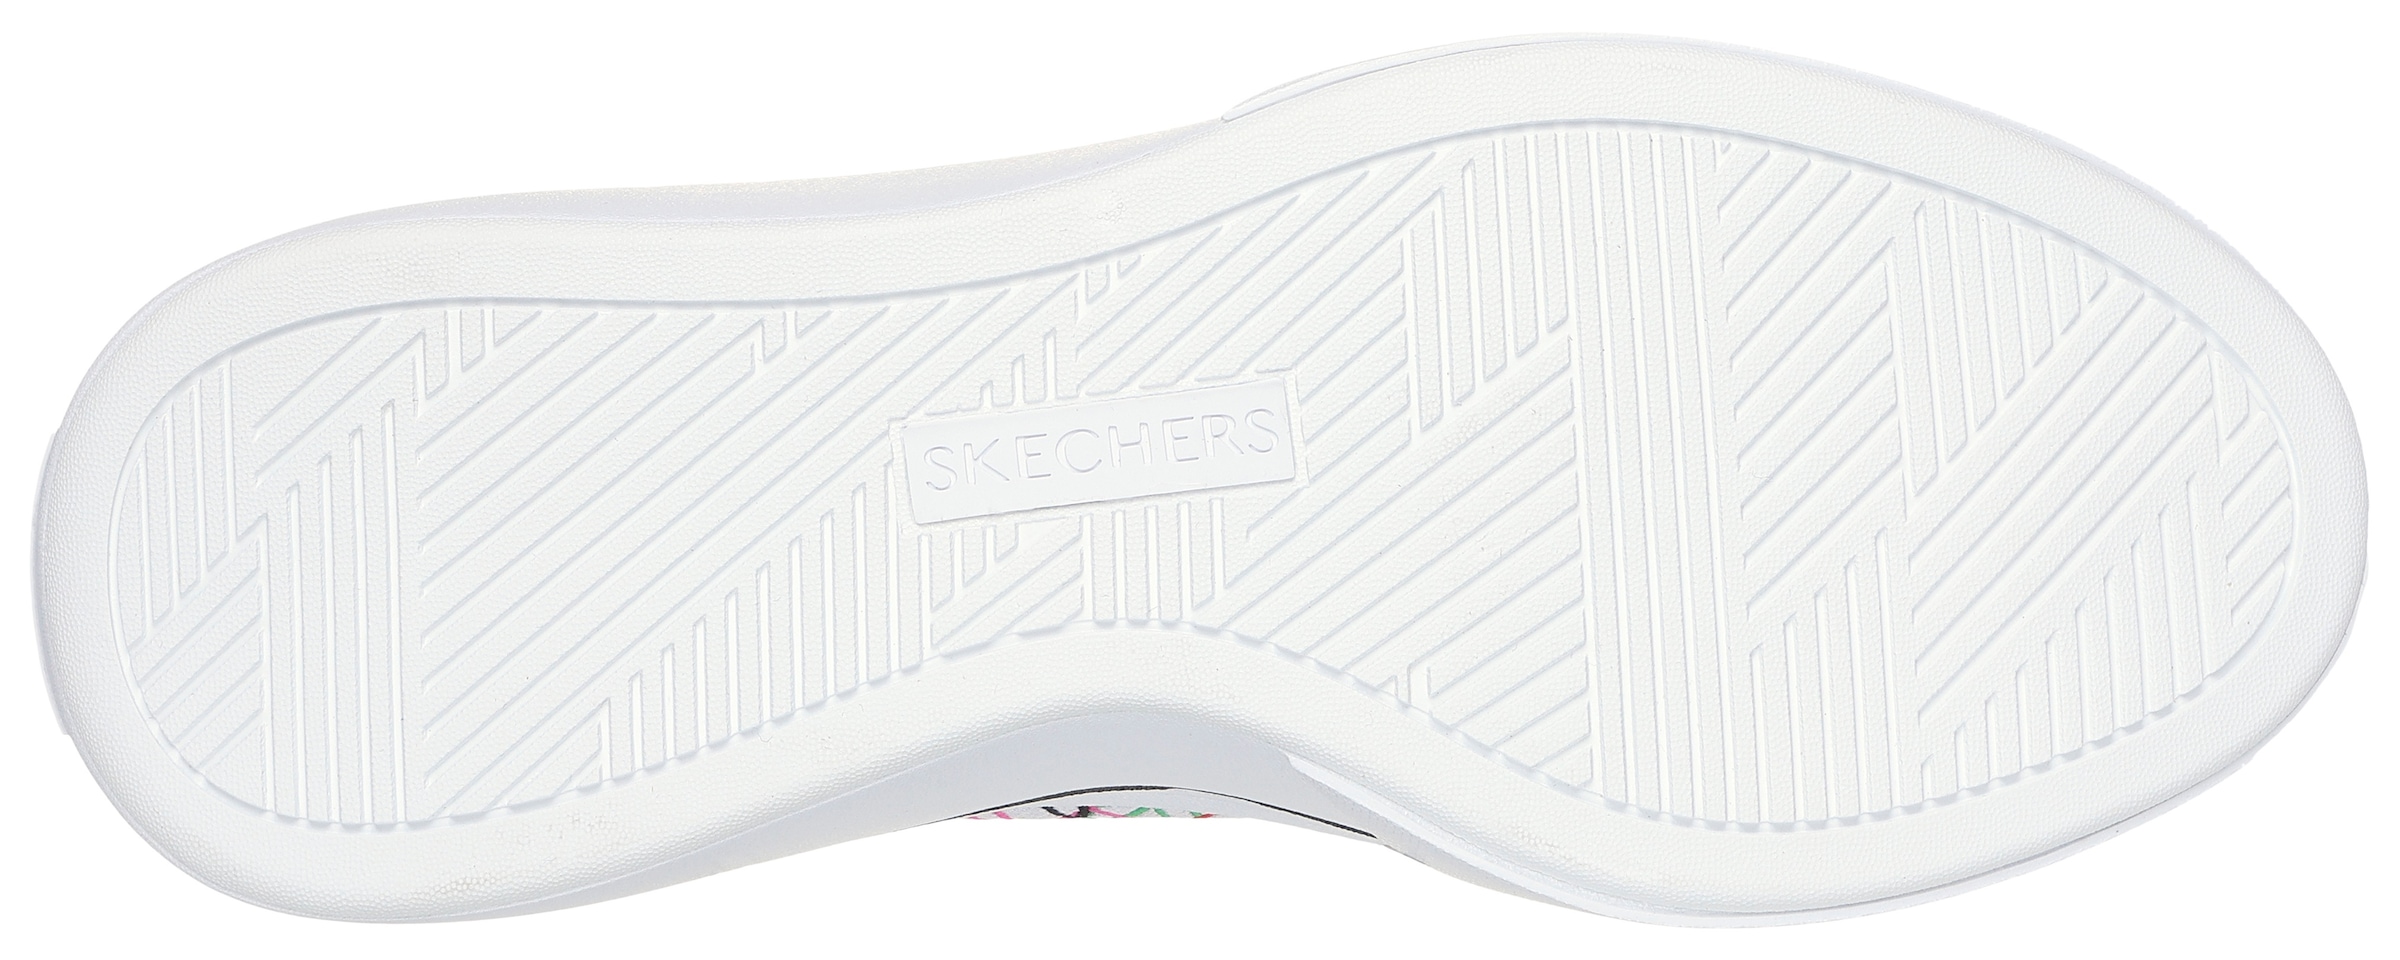 Skechers Sneaker »CORDOVA CLASSIC-LOVE LETTERS«, mit süssem Herzchenprint, Freizeitschuh, Halbschuh, Schnürschuh